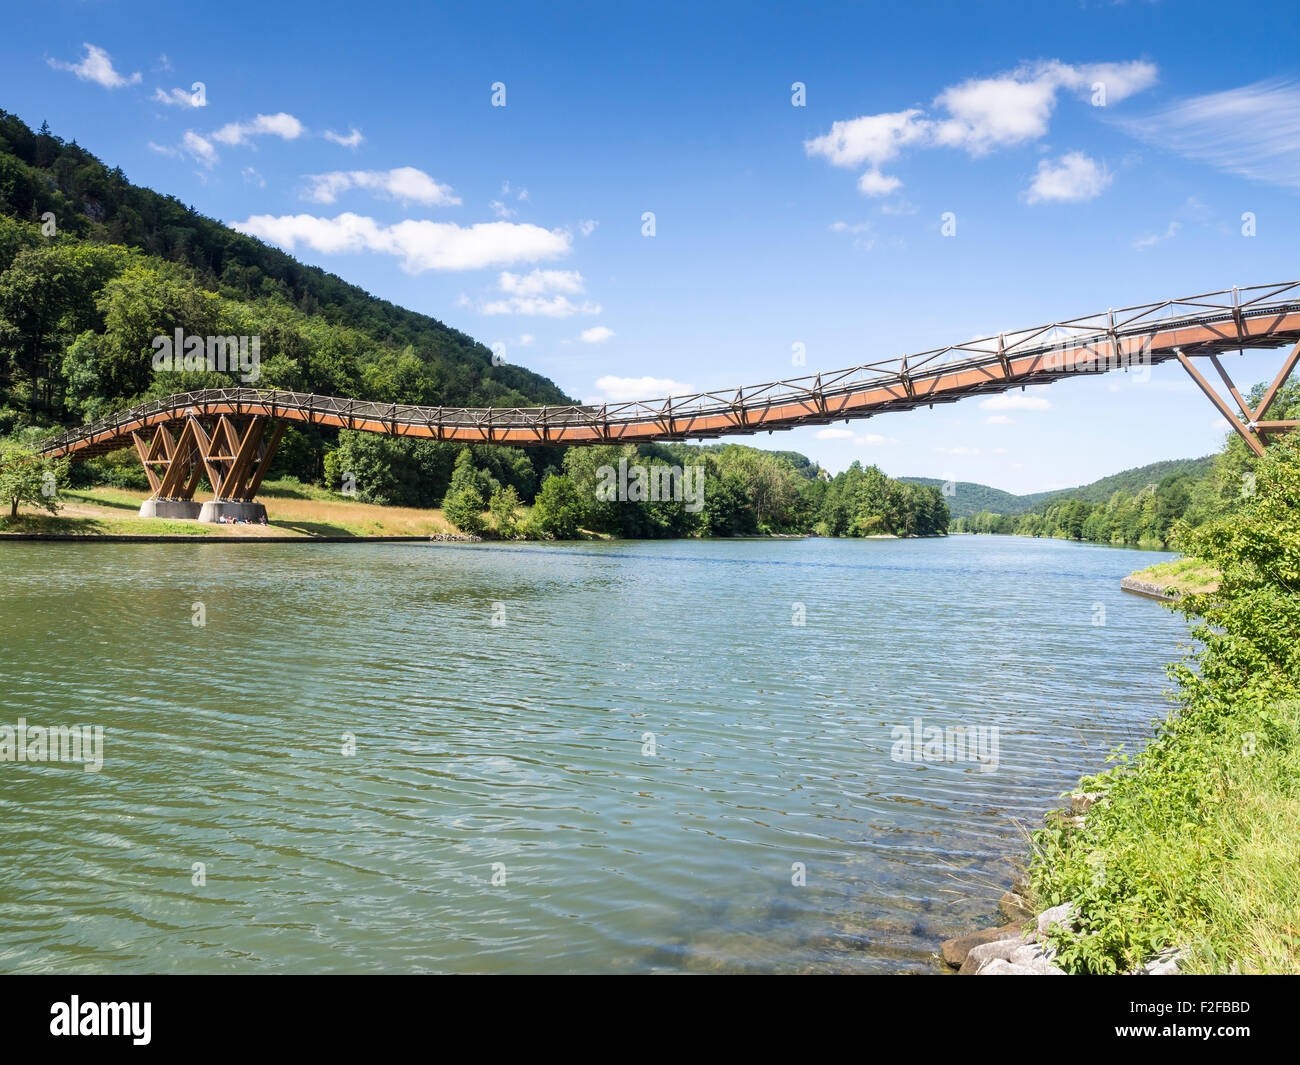 Pont de bois sur la rivière Altmühl, près de village Essing, itinéraire cyclable le long de la rivière Altmühl, Bavière, Allemagne Banque D'Images